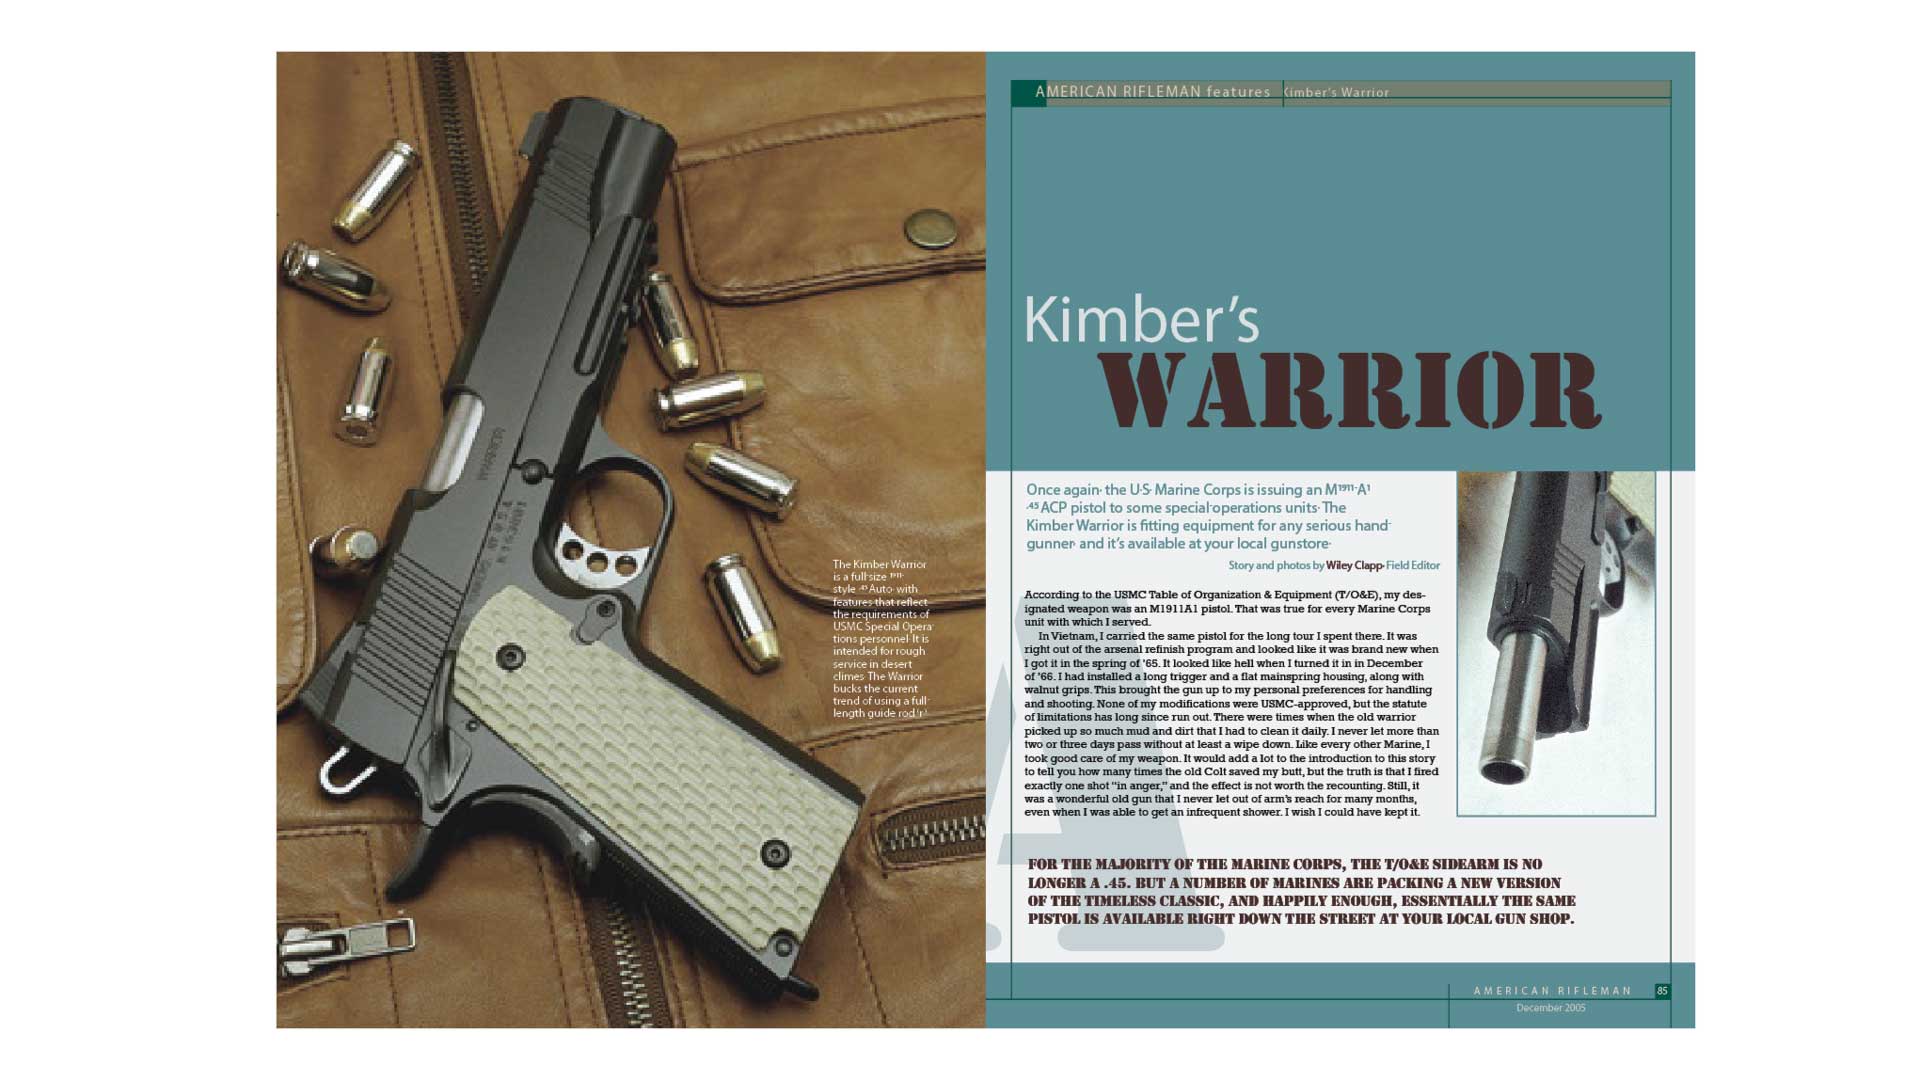 Kimber warrior magainze spread print gun m1911 firearm usmc text article screenshot